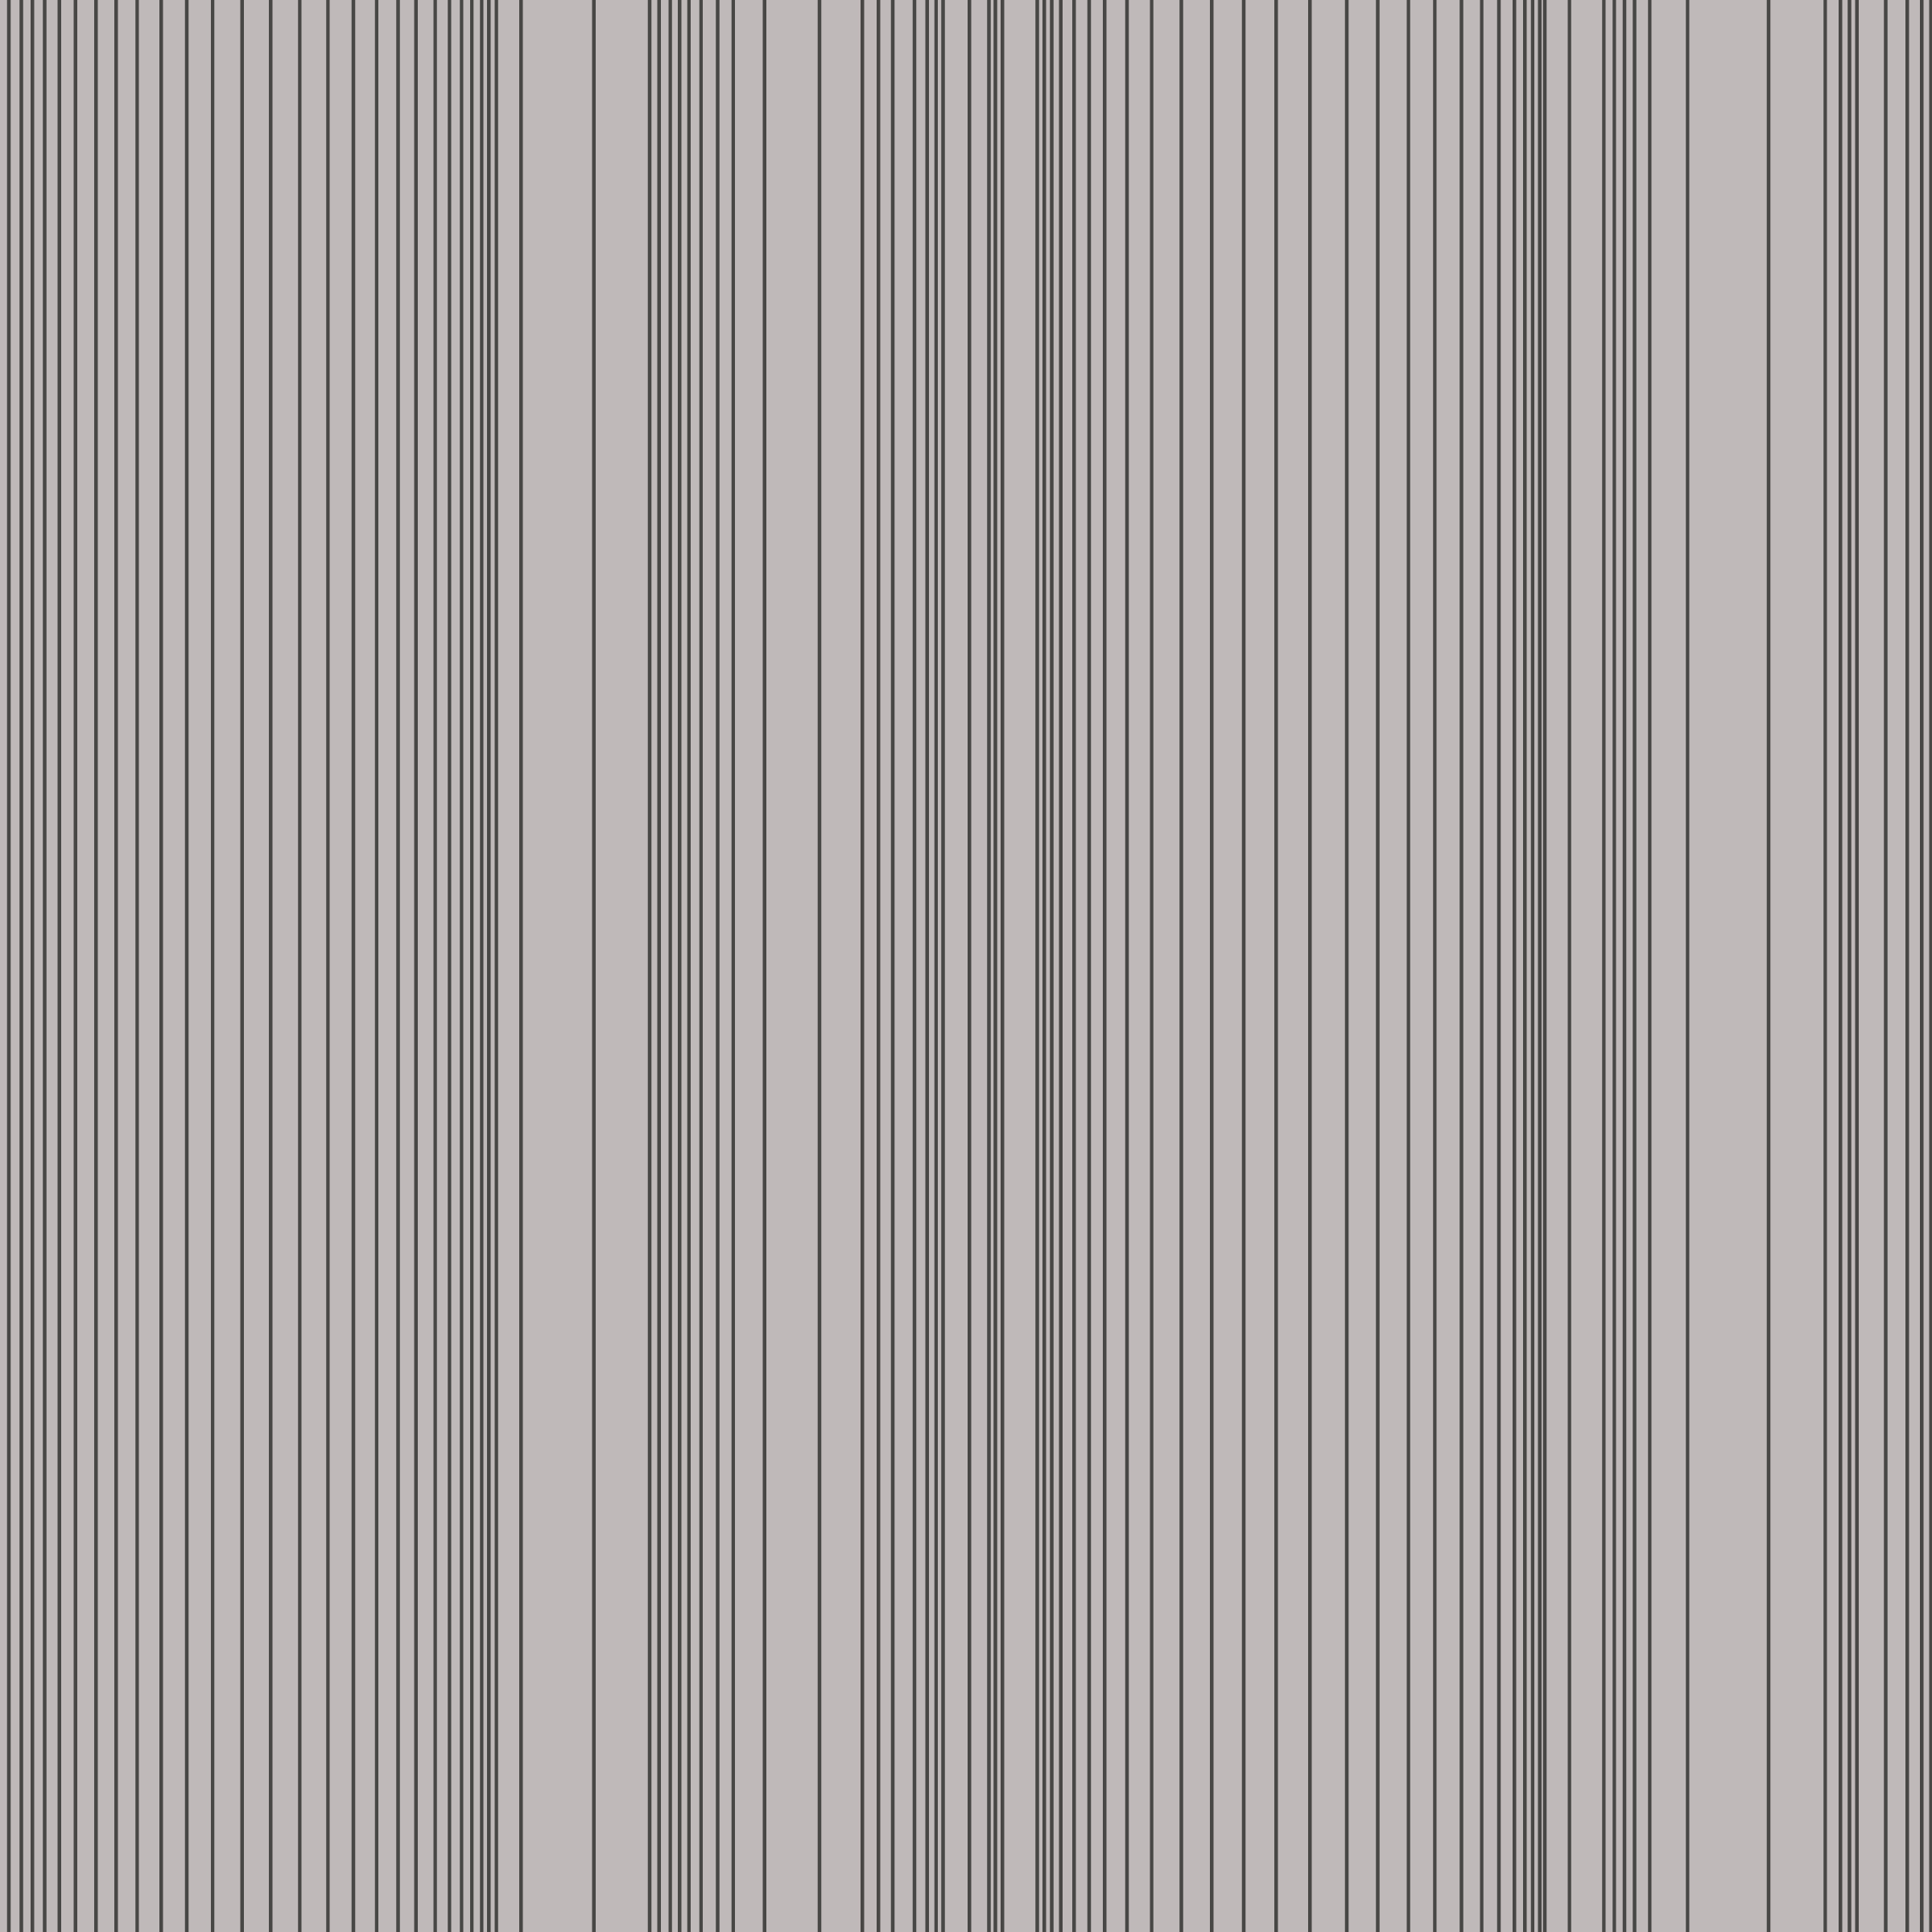 Encoded Stripe - Fog (Copy)